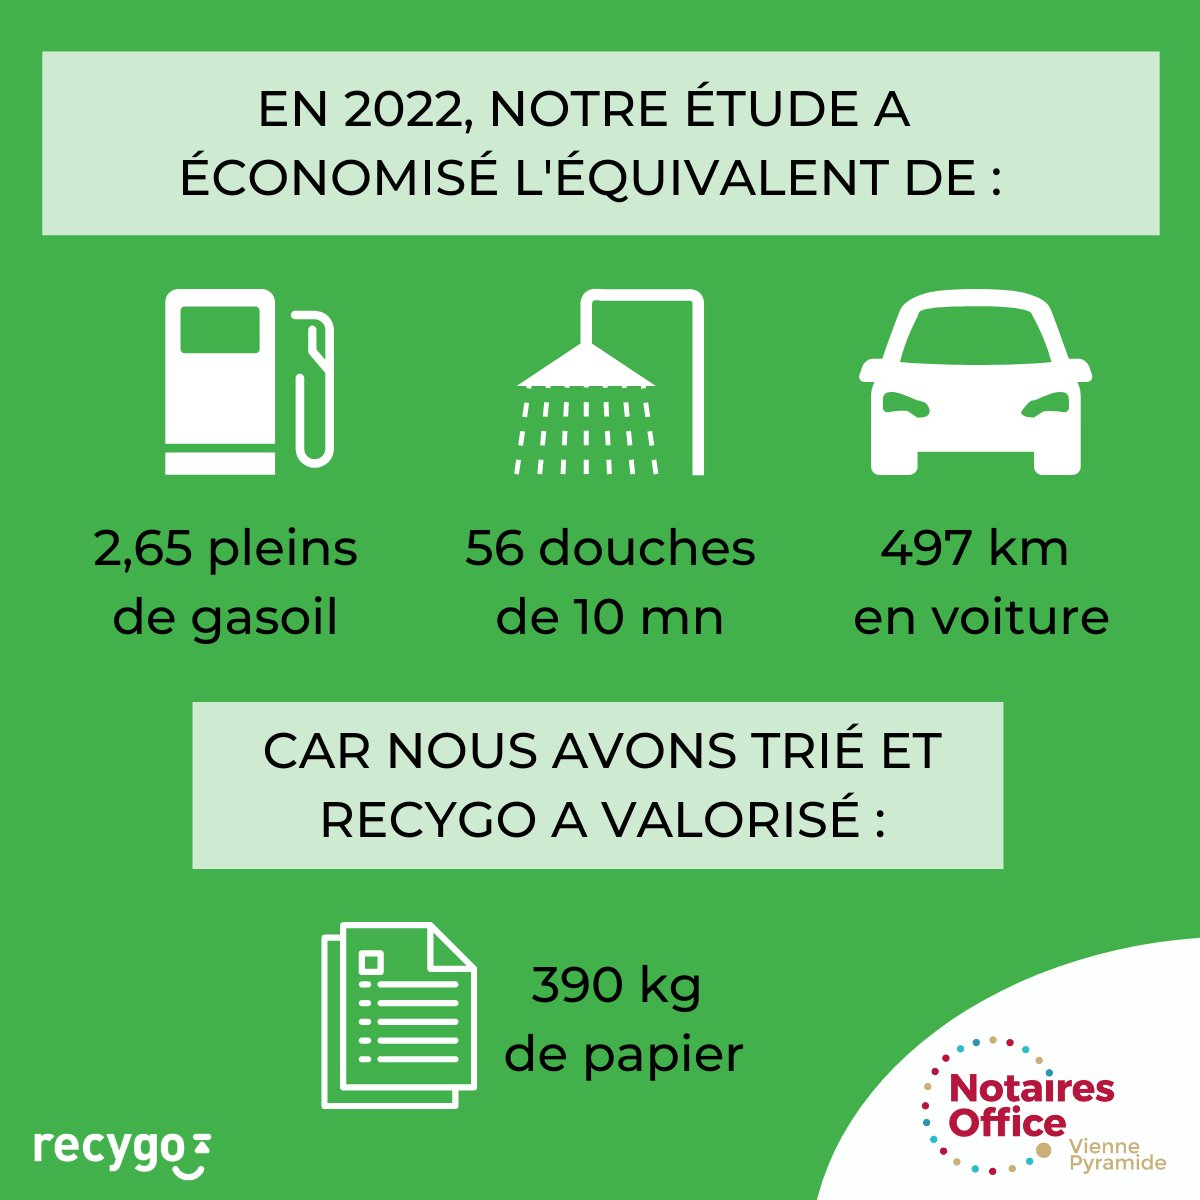 Voici notre bilan de performance du tri en 2022, avec un impact positif pour l'#environnement ! 🌱 🔋 Nous avons aussi installé 6 bornes de recharge pour les véhicules électriques. Merci aux #collaborateurs de jouer le jeu pour la planète ! 🌍 #recyclage #papier #RSE @recygo